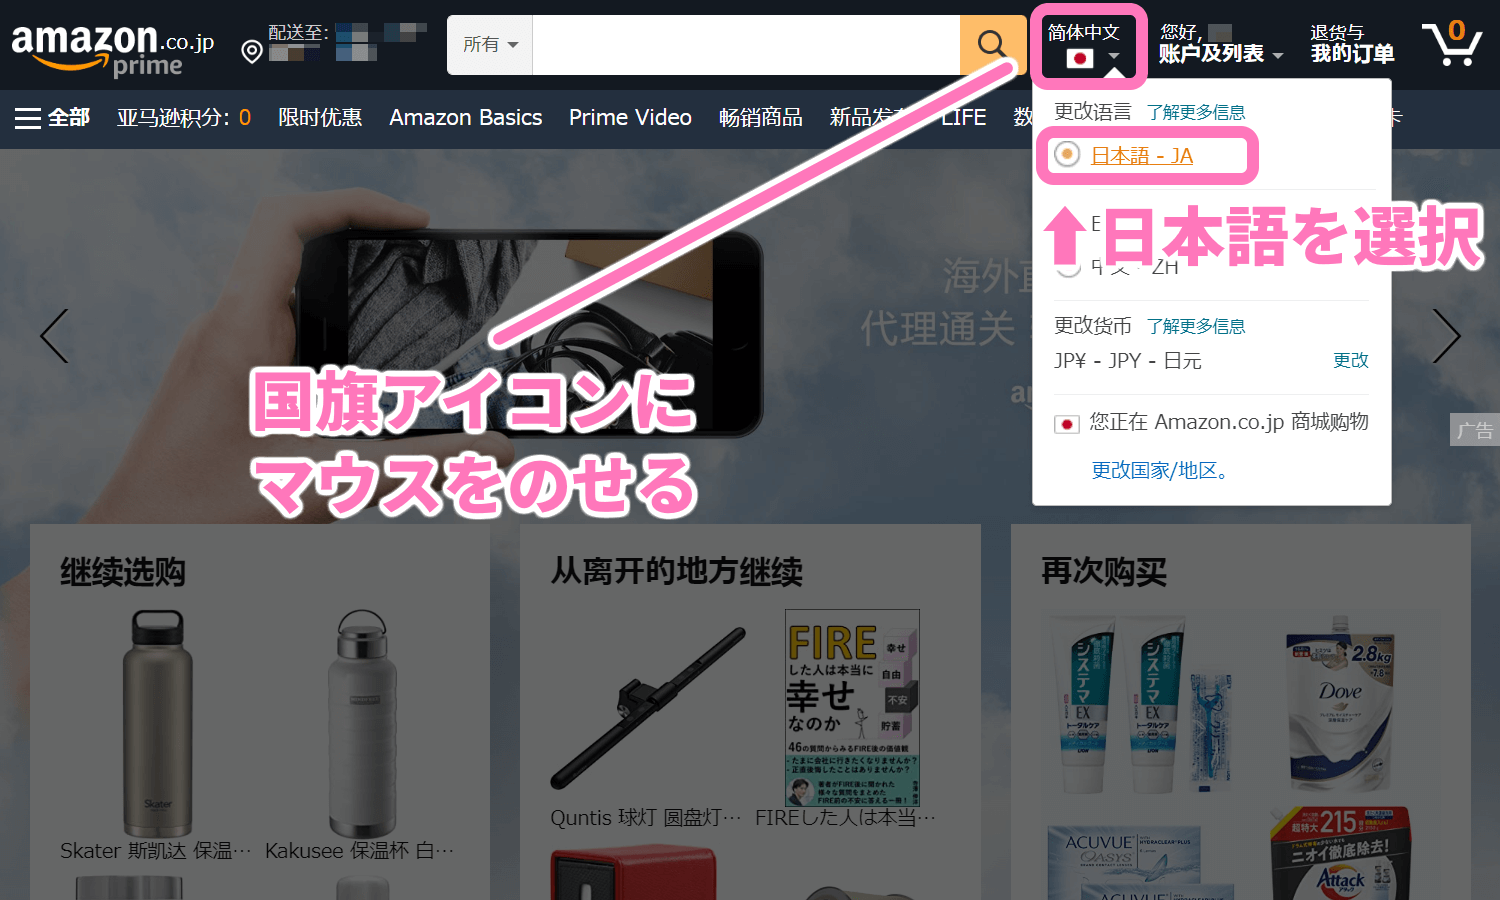 Amazon検索ボックス横の国旗アイコンにマウスをのせて「日本 - 日本語」を選択